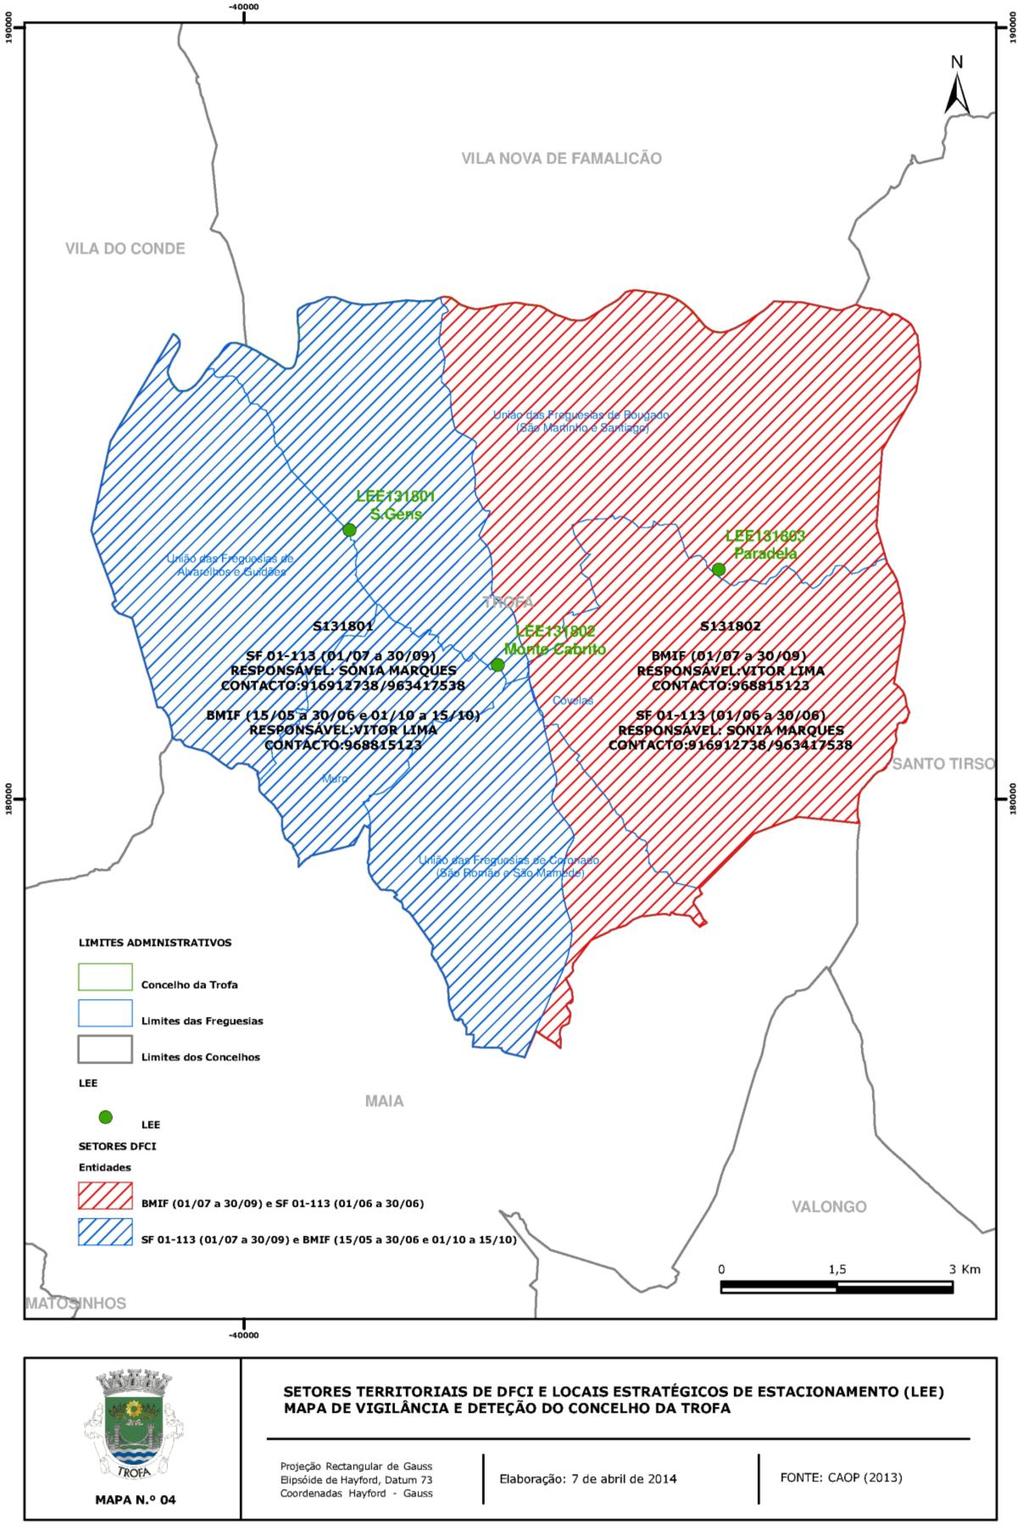 Mapa 4 Setores Territoriais de DFCI e Locais Estratégicos de